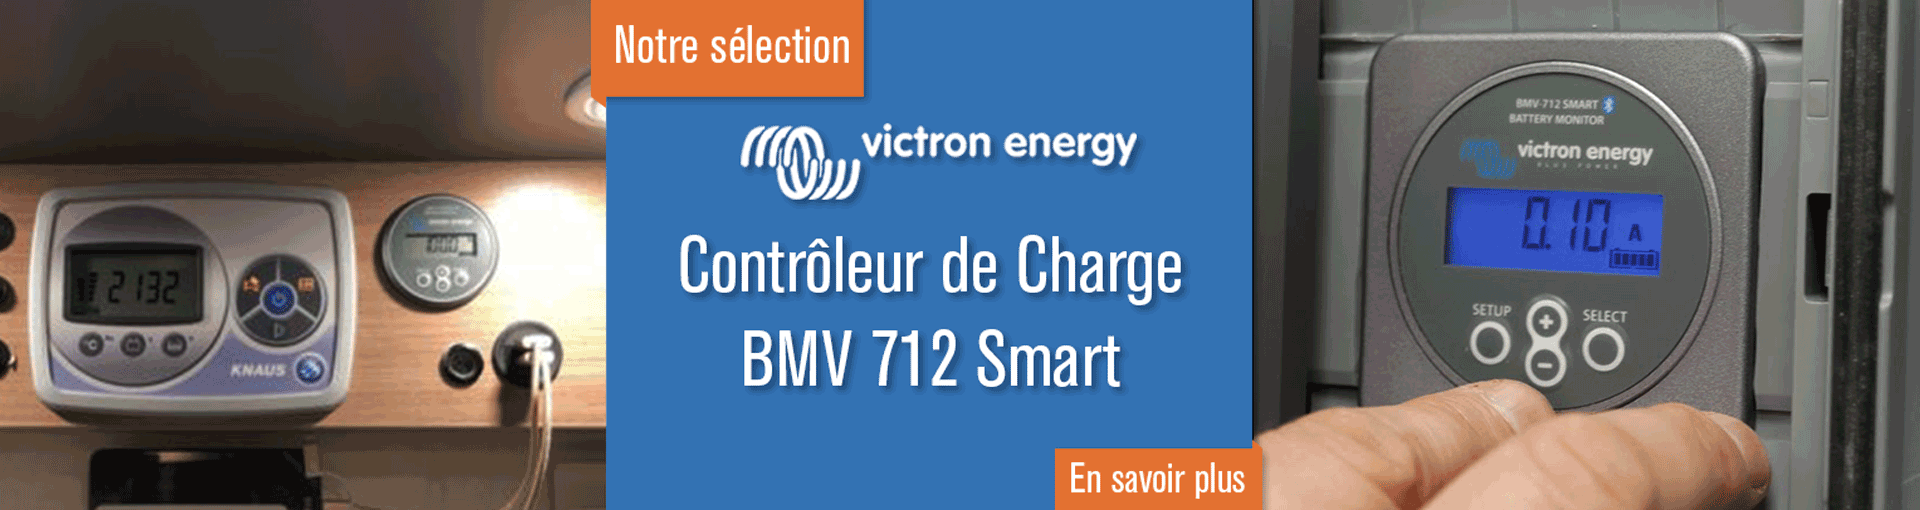 Contrôleur De Charge Batterie BMV 712 Smart - Victron Energy